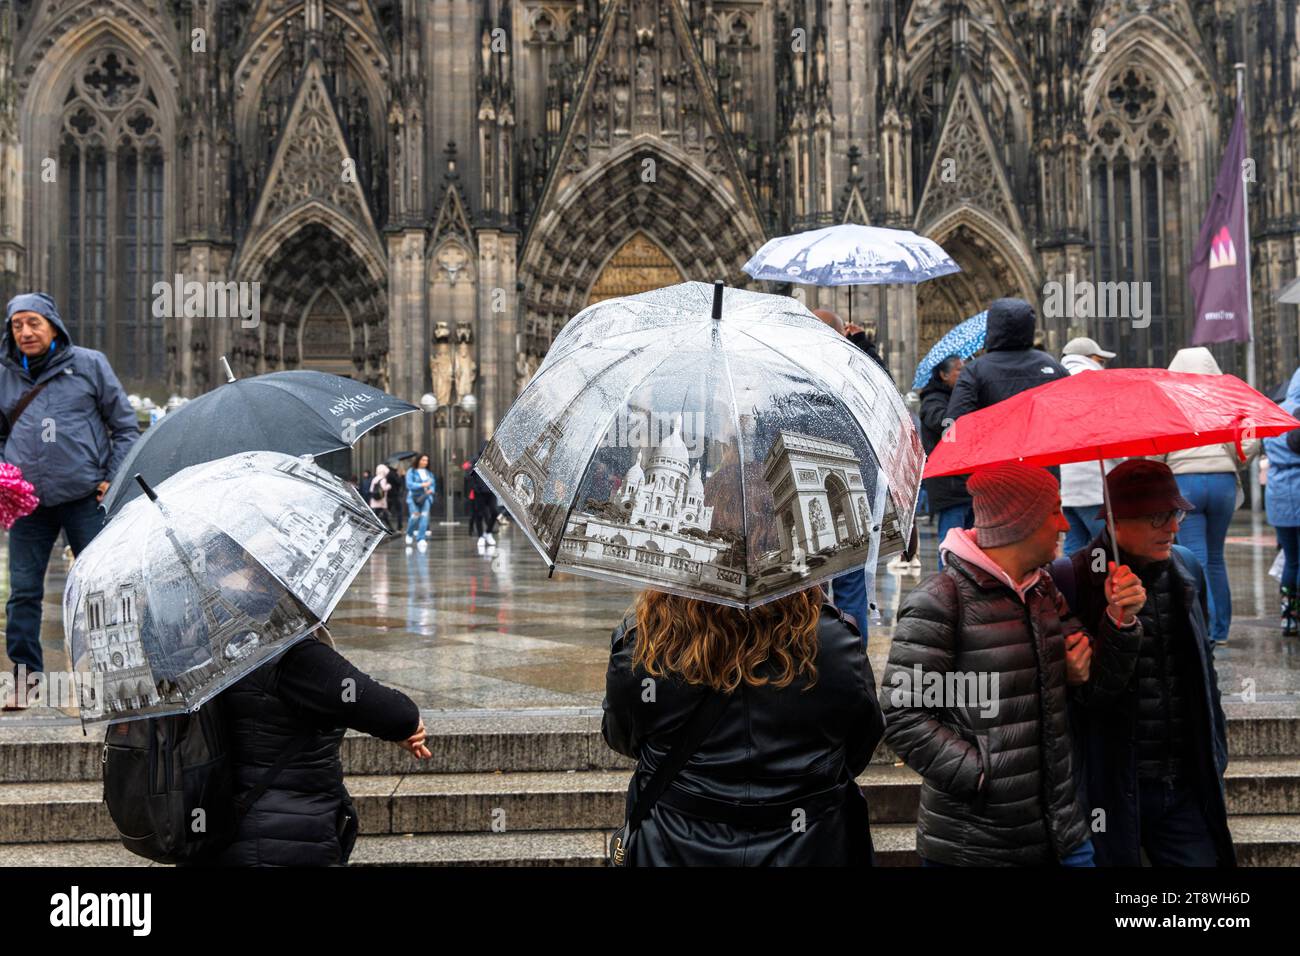 Touristen mit Sonnenschirmen im Pariser Stil vor dem Dom, Köln, Deutschland. Touristen mit Regenschirmen mit Paris Motiven stehen bei Regen vor d Stockfoto